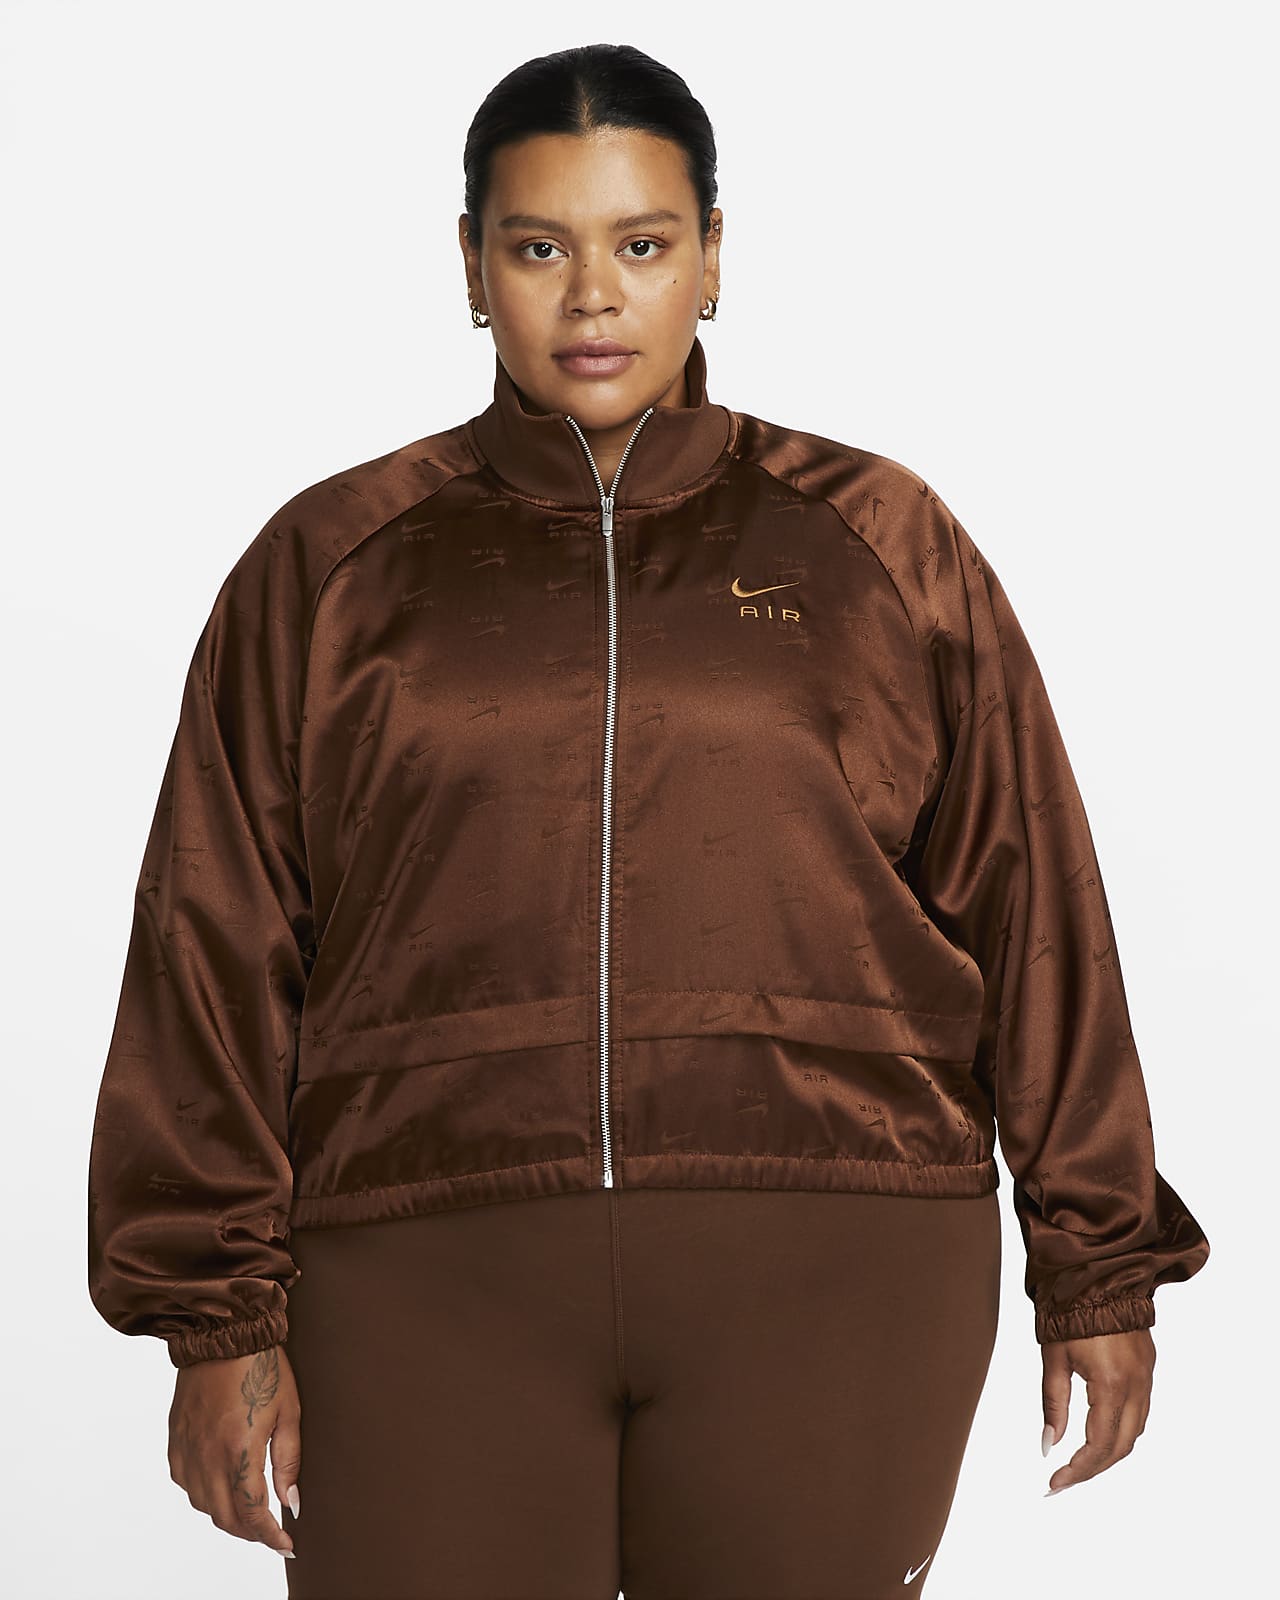 Nike Air Women's Full-Zip Satin Jacket (Plus Size)